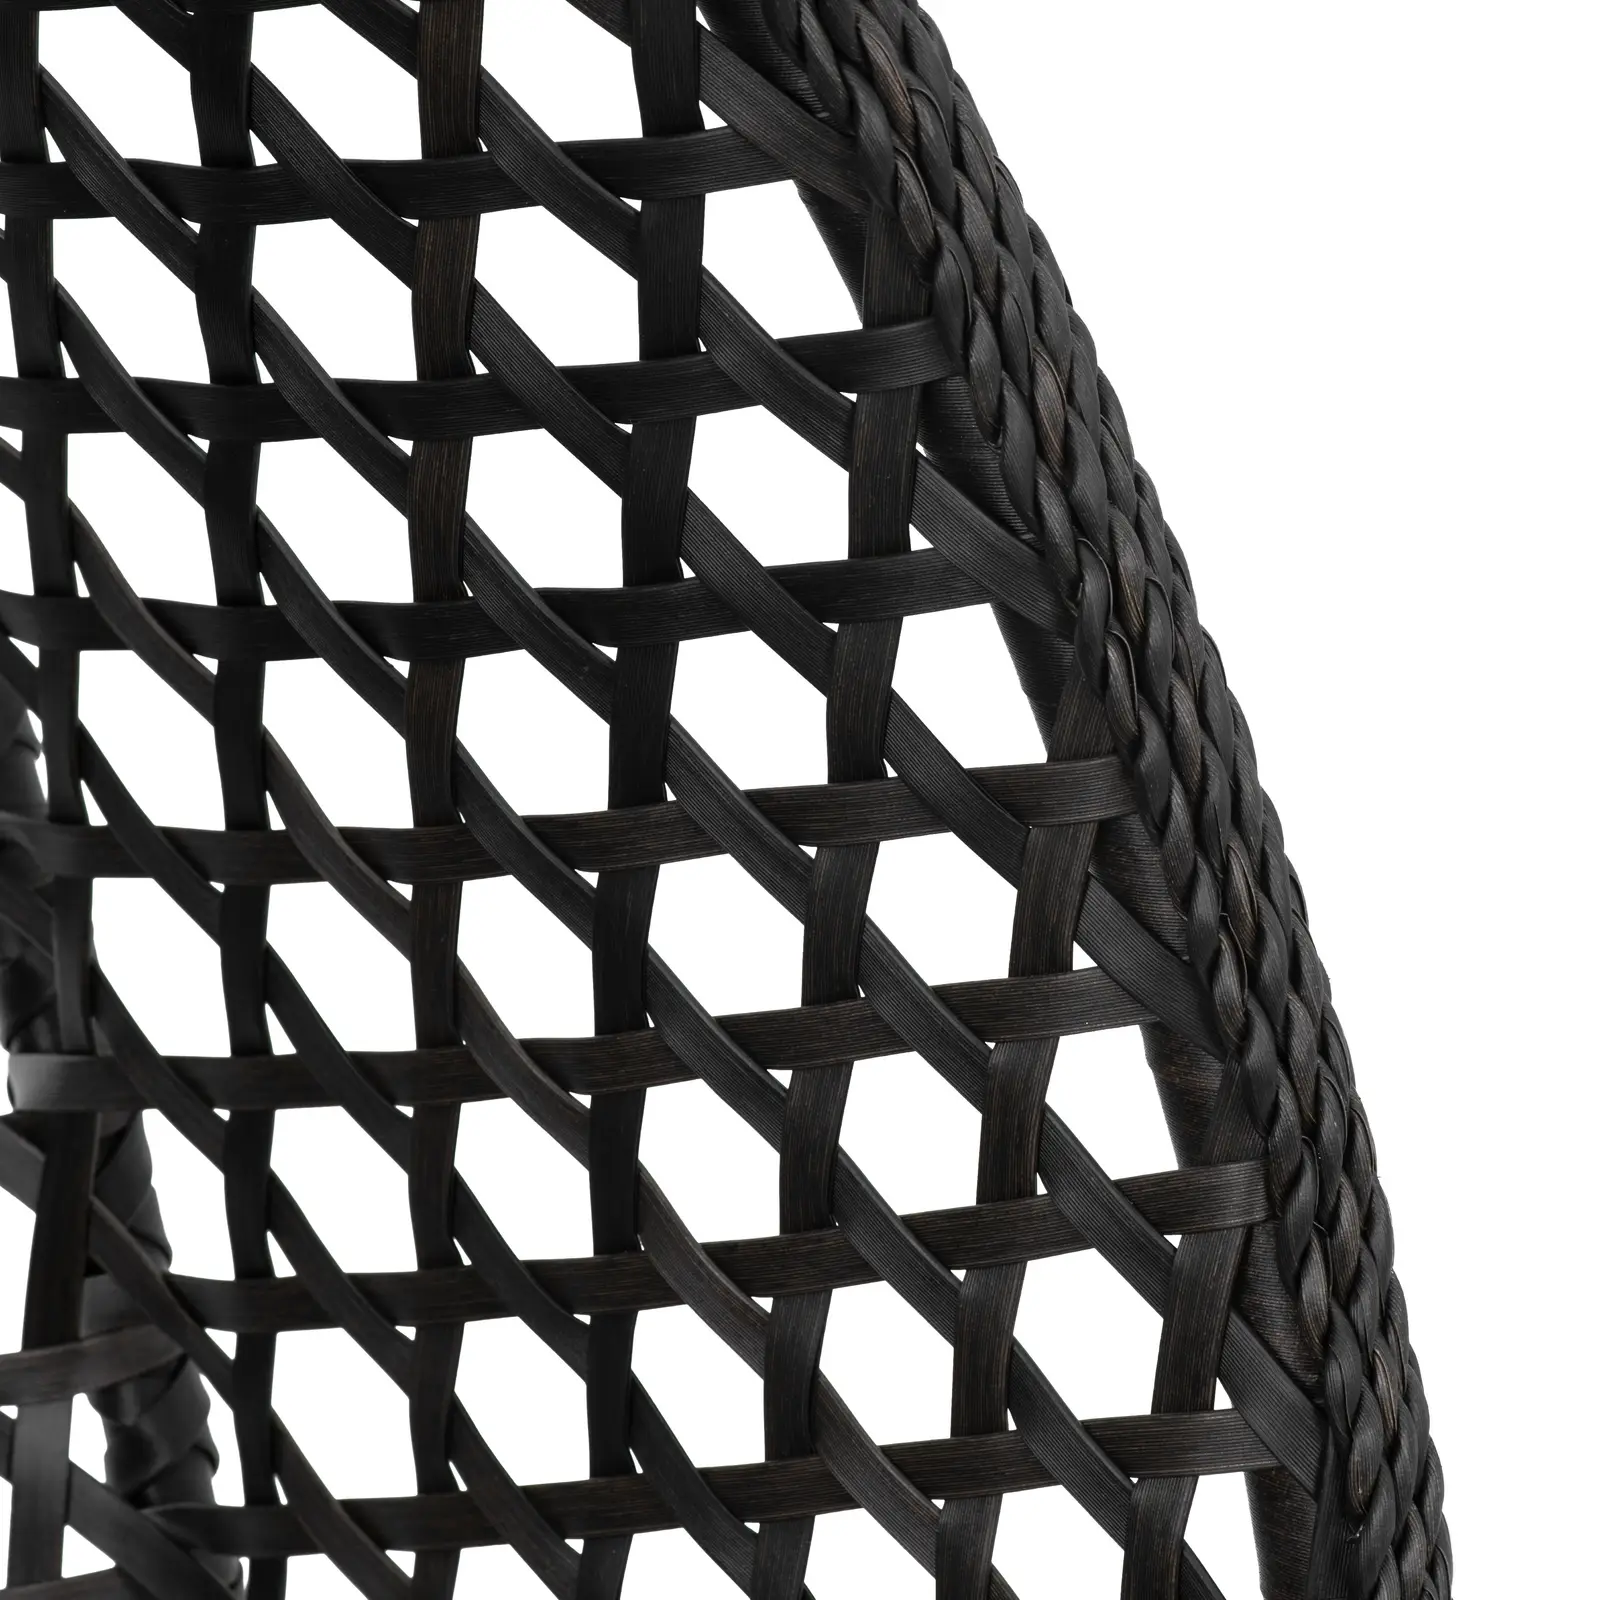 Buitenhangstoel met frame - opklapbare zitting - zwart/grijs - druppelvorm